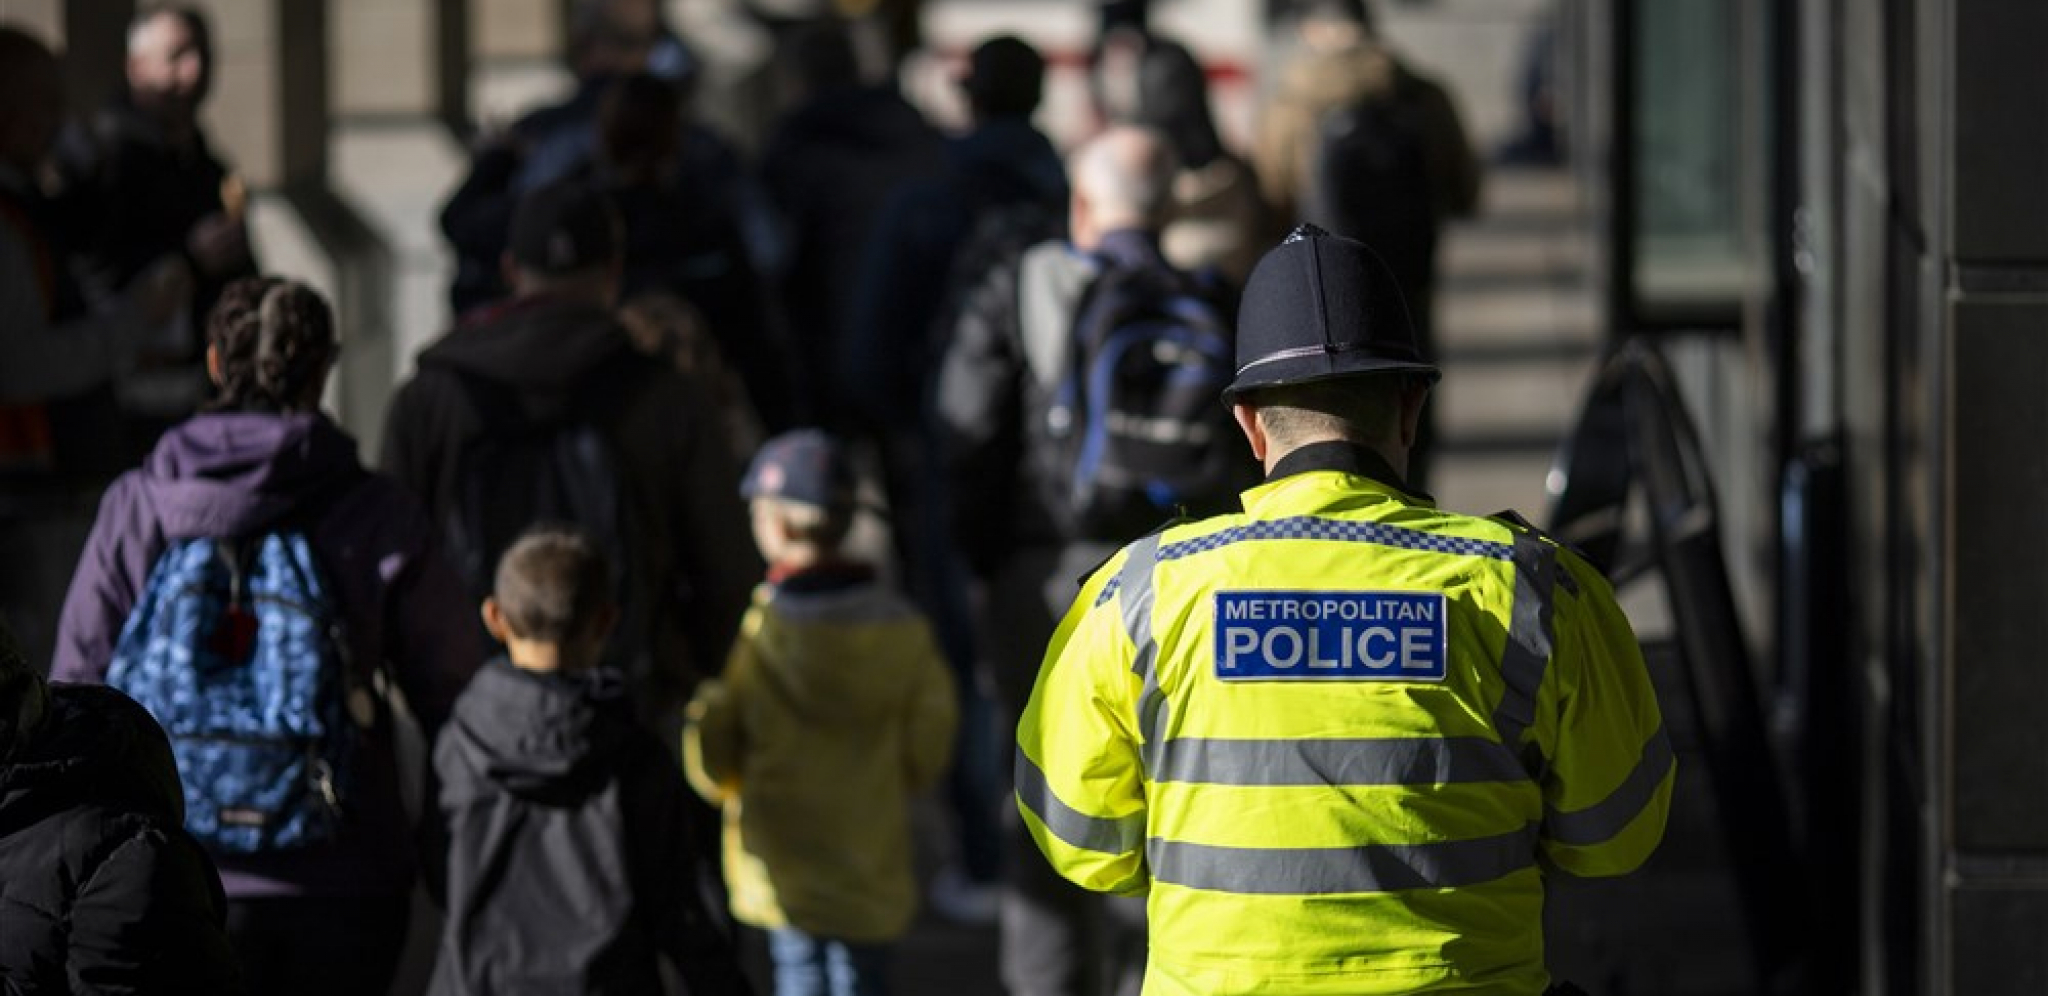 SKORO 20 GODINA SILOVAO I ZLOSTAVLJAO ŽENE Policijac iz Londona sve priznao